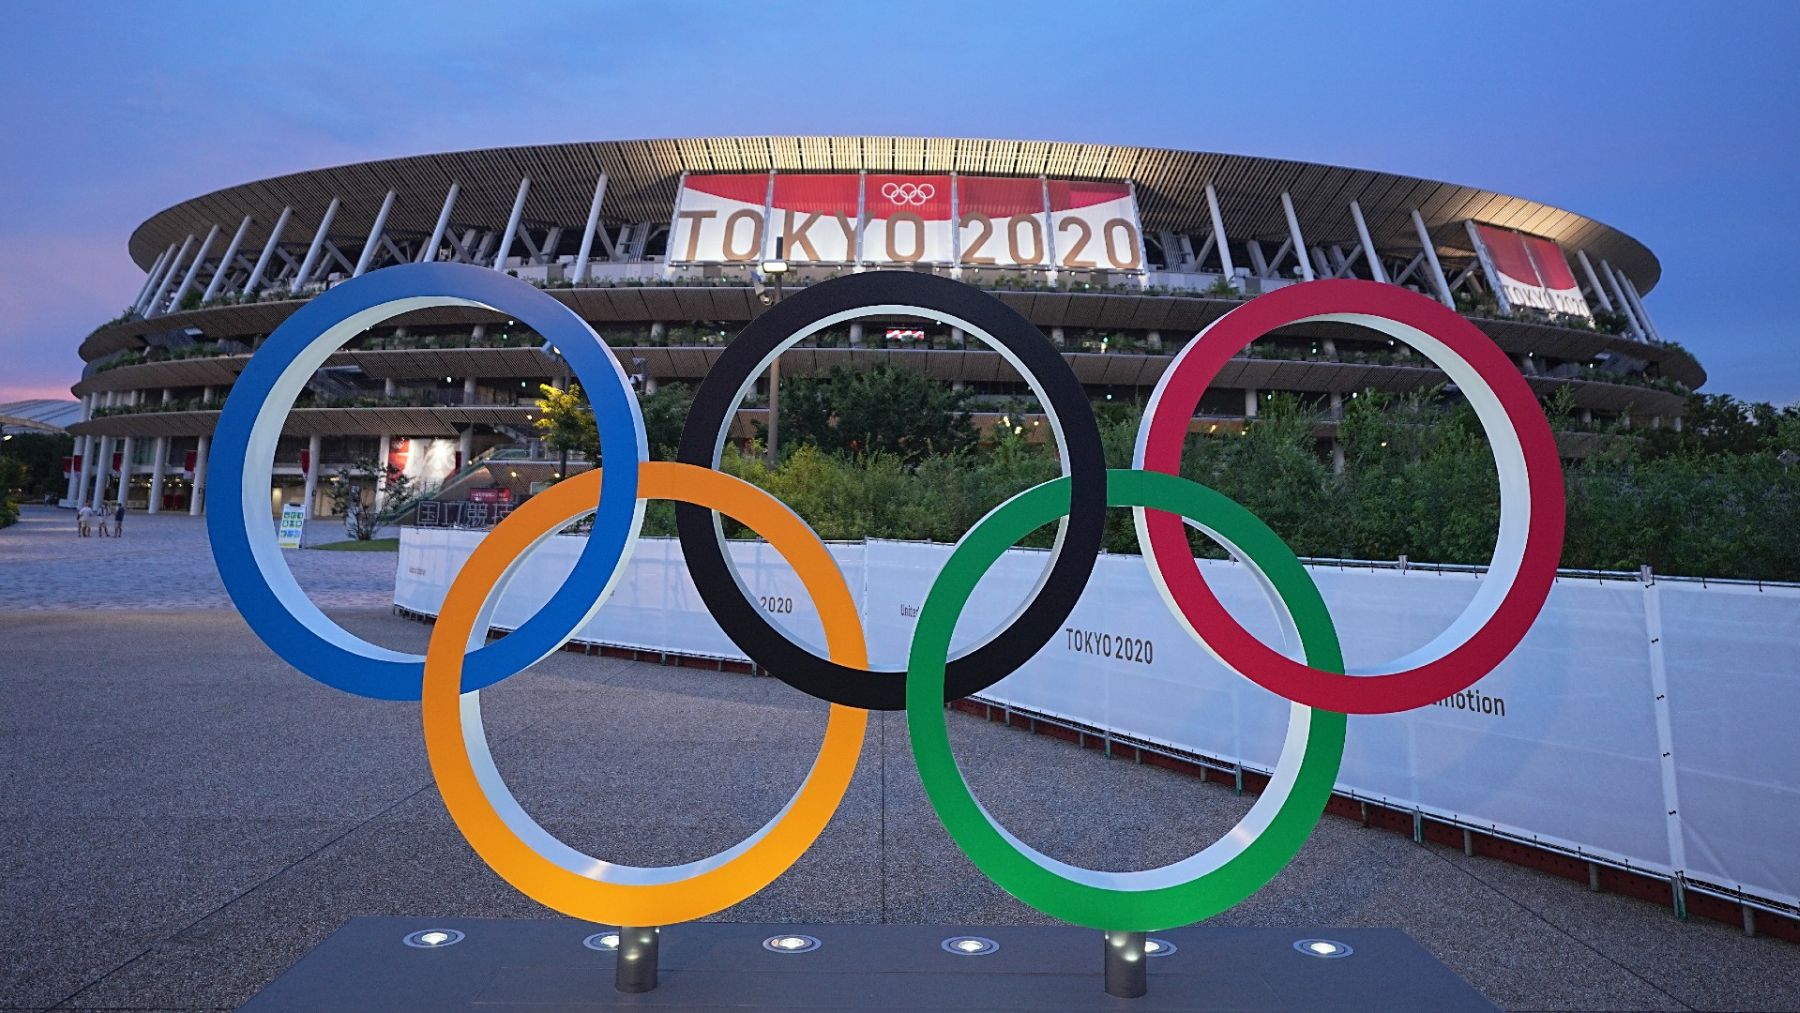 Los ciberdelincuentes podrían apuntar a los Juegos Olímpicos de Tokio 2020